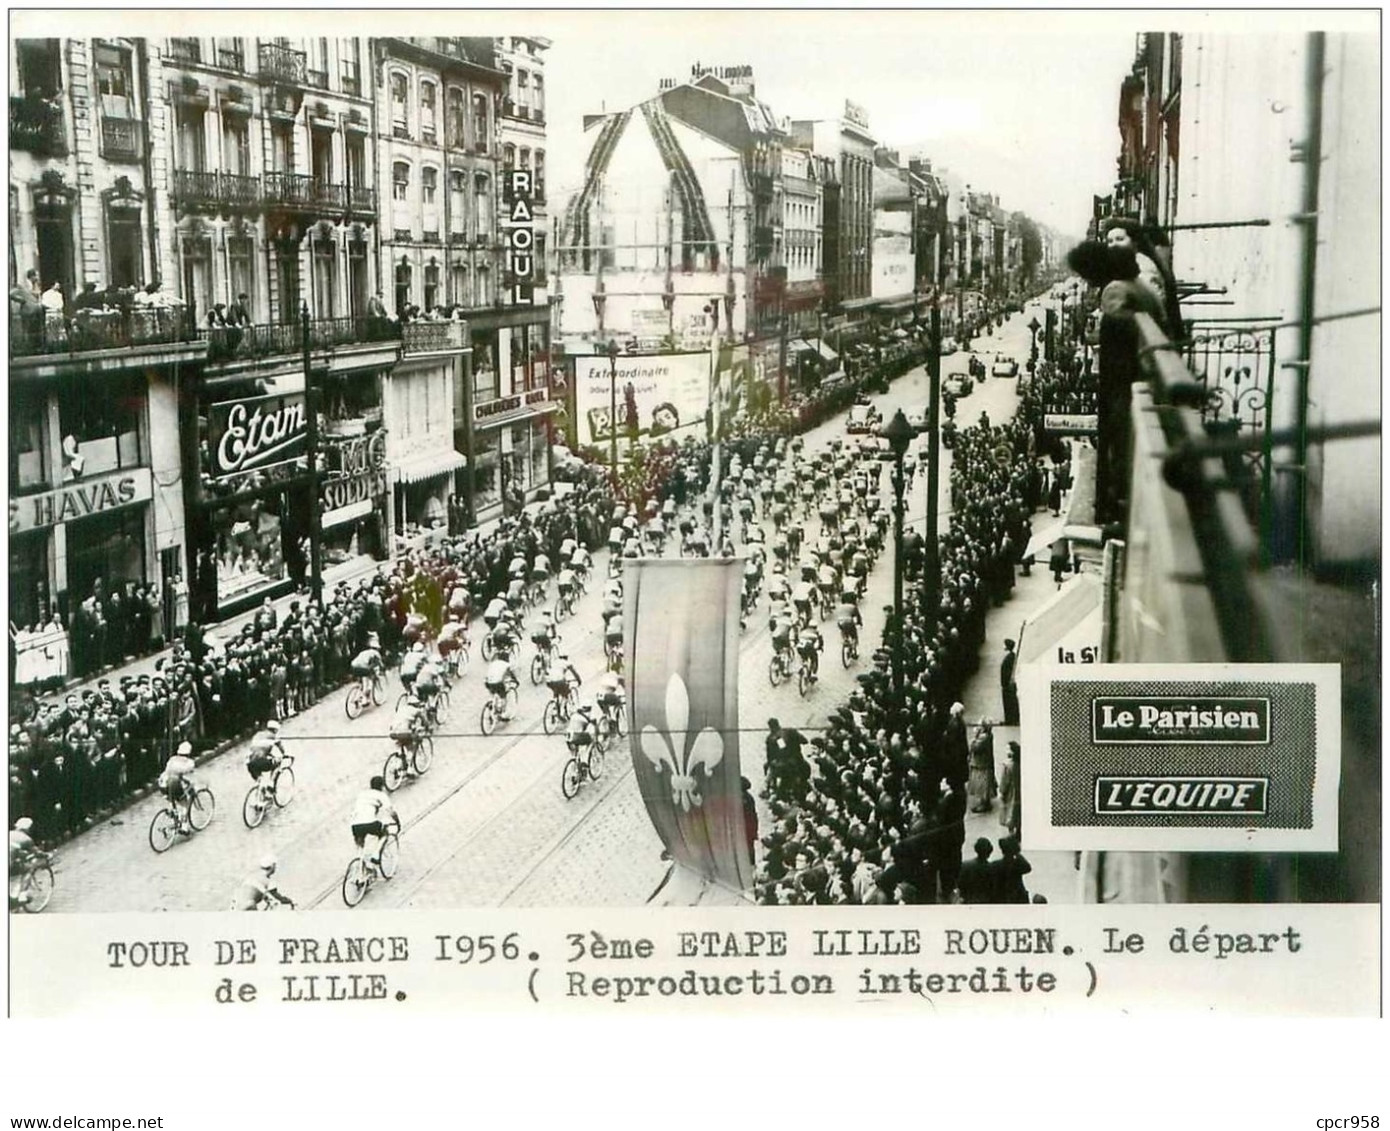 PHOTO DE PRESSE ORIGINALE TOUR DE FRANCE 1956.20X15.3eme ETAPE LILLE ROUEN.LE DEPART DE LILLE.n°18658 - Wielrennen